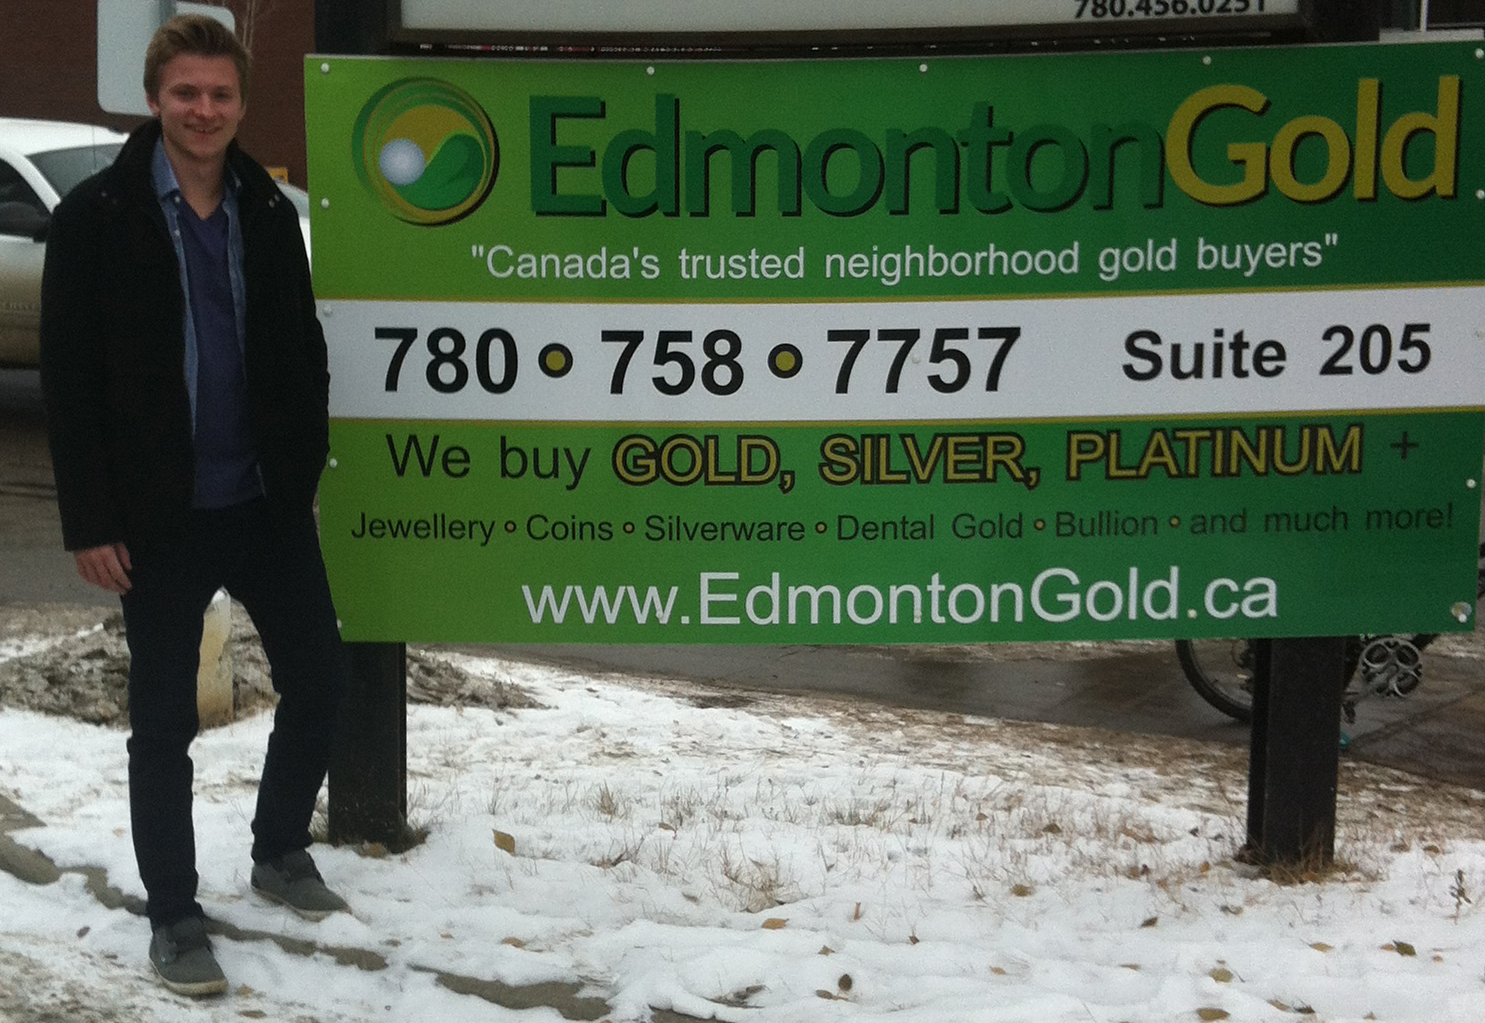 Edmonton Gold manager Chris Gardner